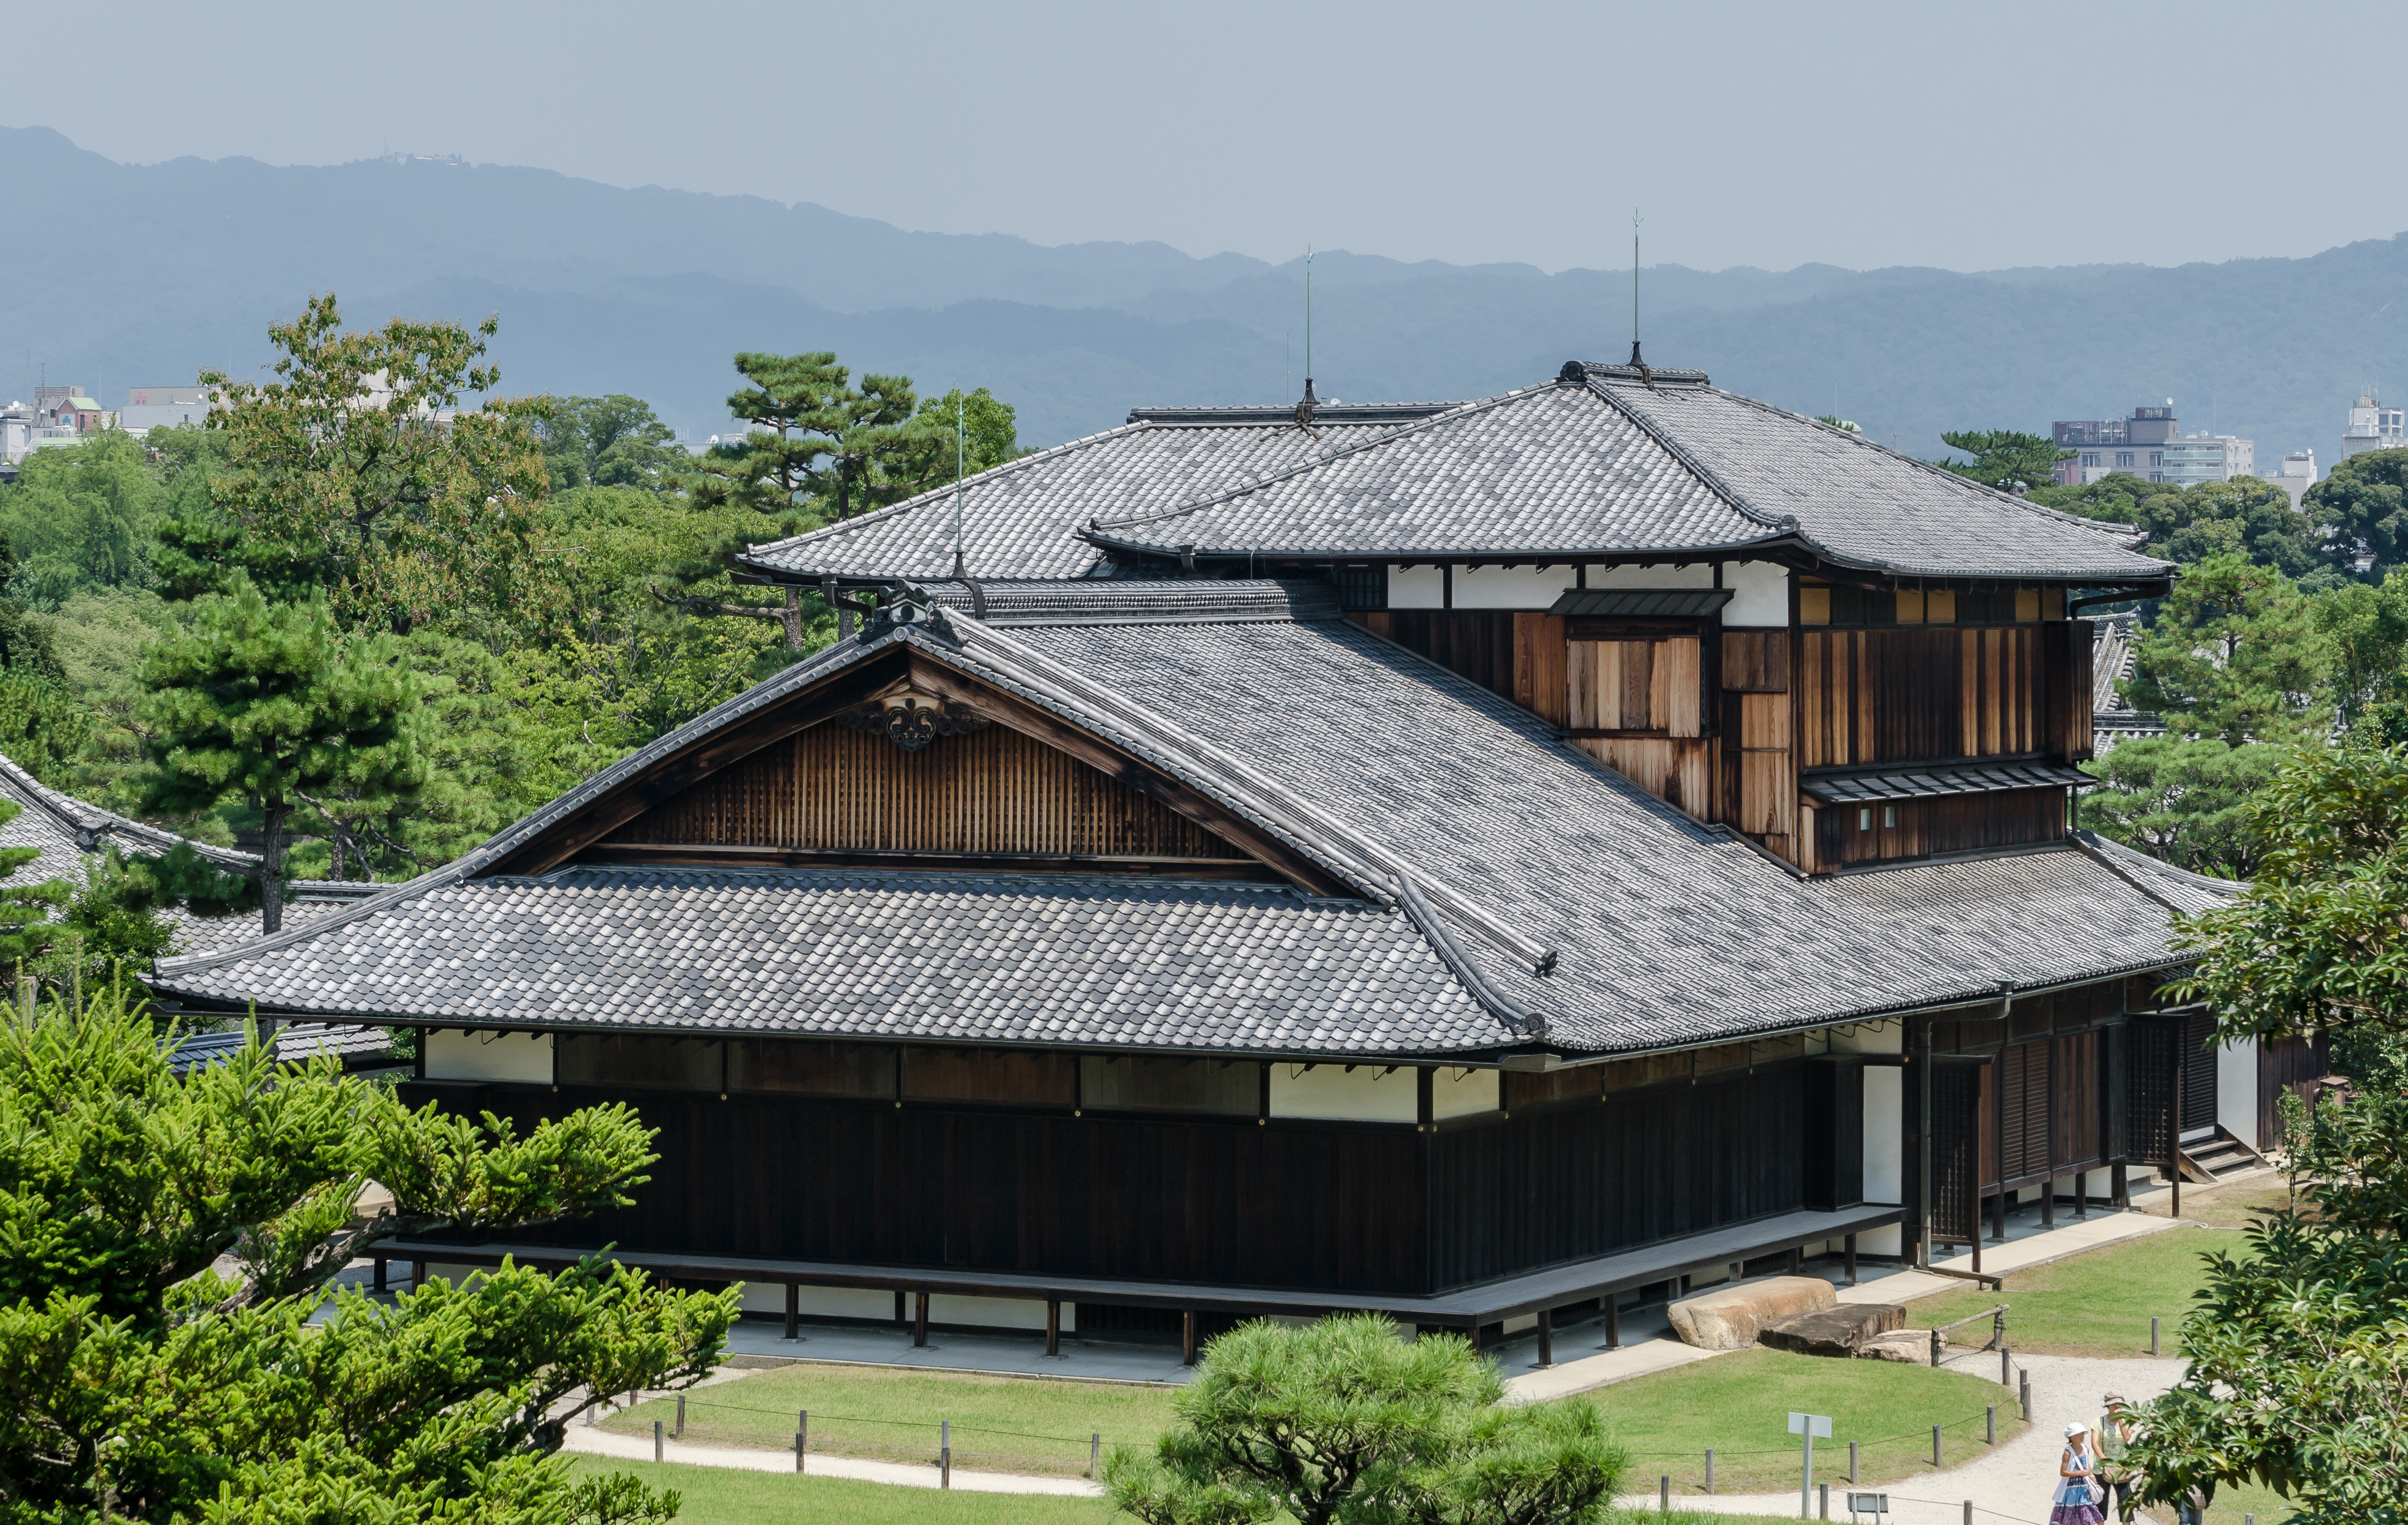 Thành và lâu đài Nijo nổi tiếng được khởi công xây dựng vào năm 1603 do Mạc chúa Tokugawa Shogun khởi động. Nơi đây nổi tiếng với “nightingale floors” tạm dịch “tầng sơn ca” được thiết kế để âm thanh của mỗi bước chân di chuyển trong lâu đài sẽ có tiếng chim báo động có kẻ đột nhập.